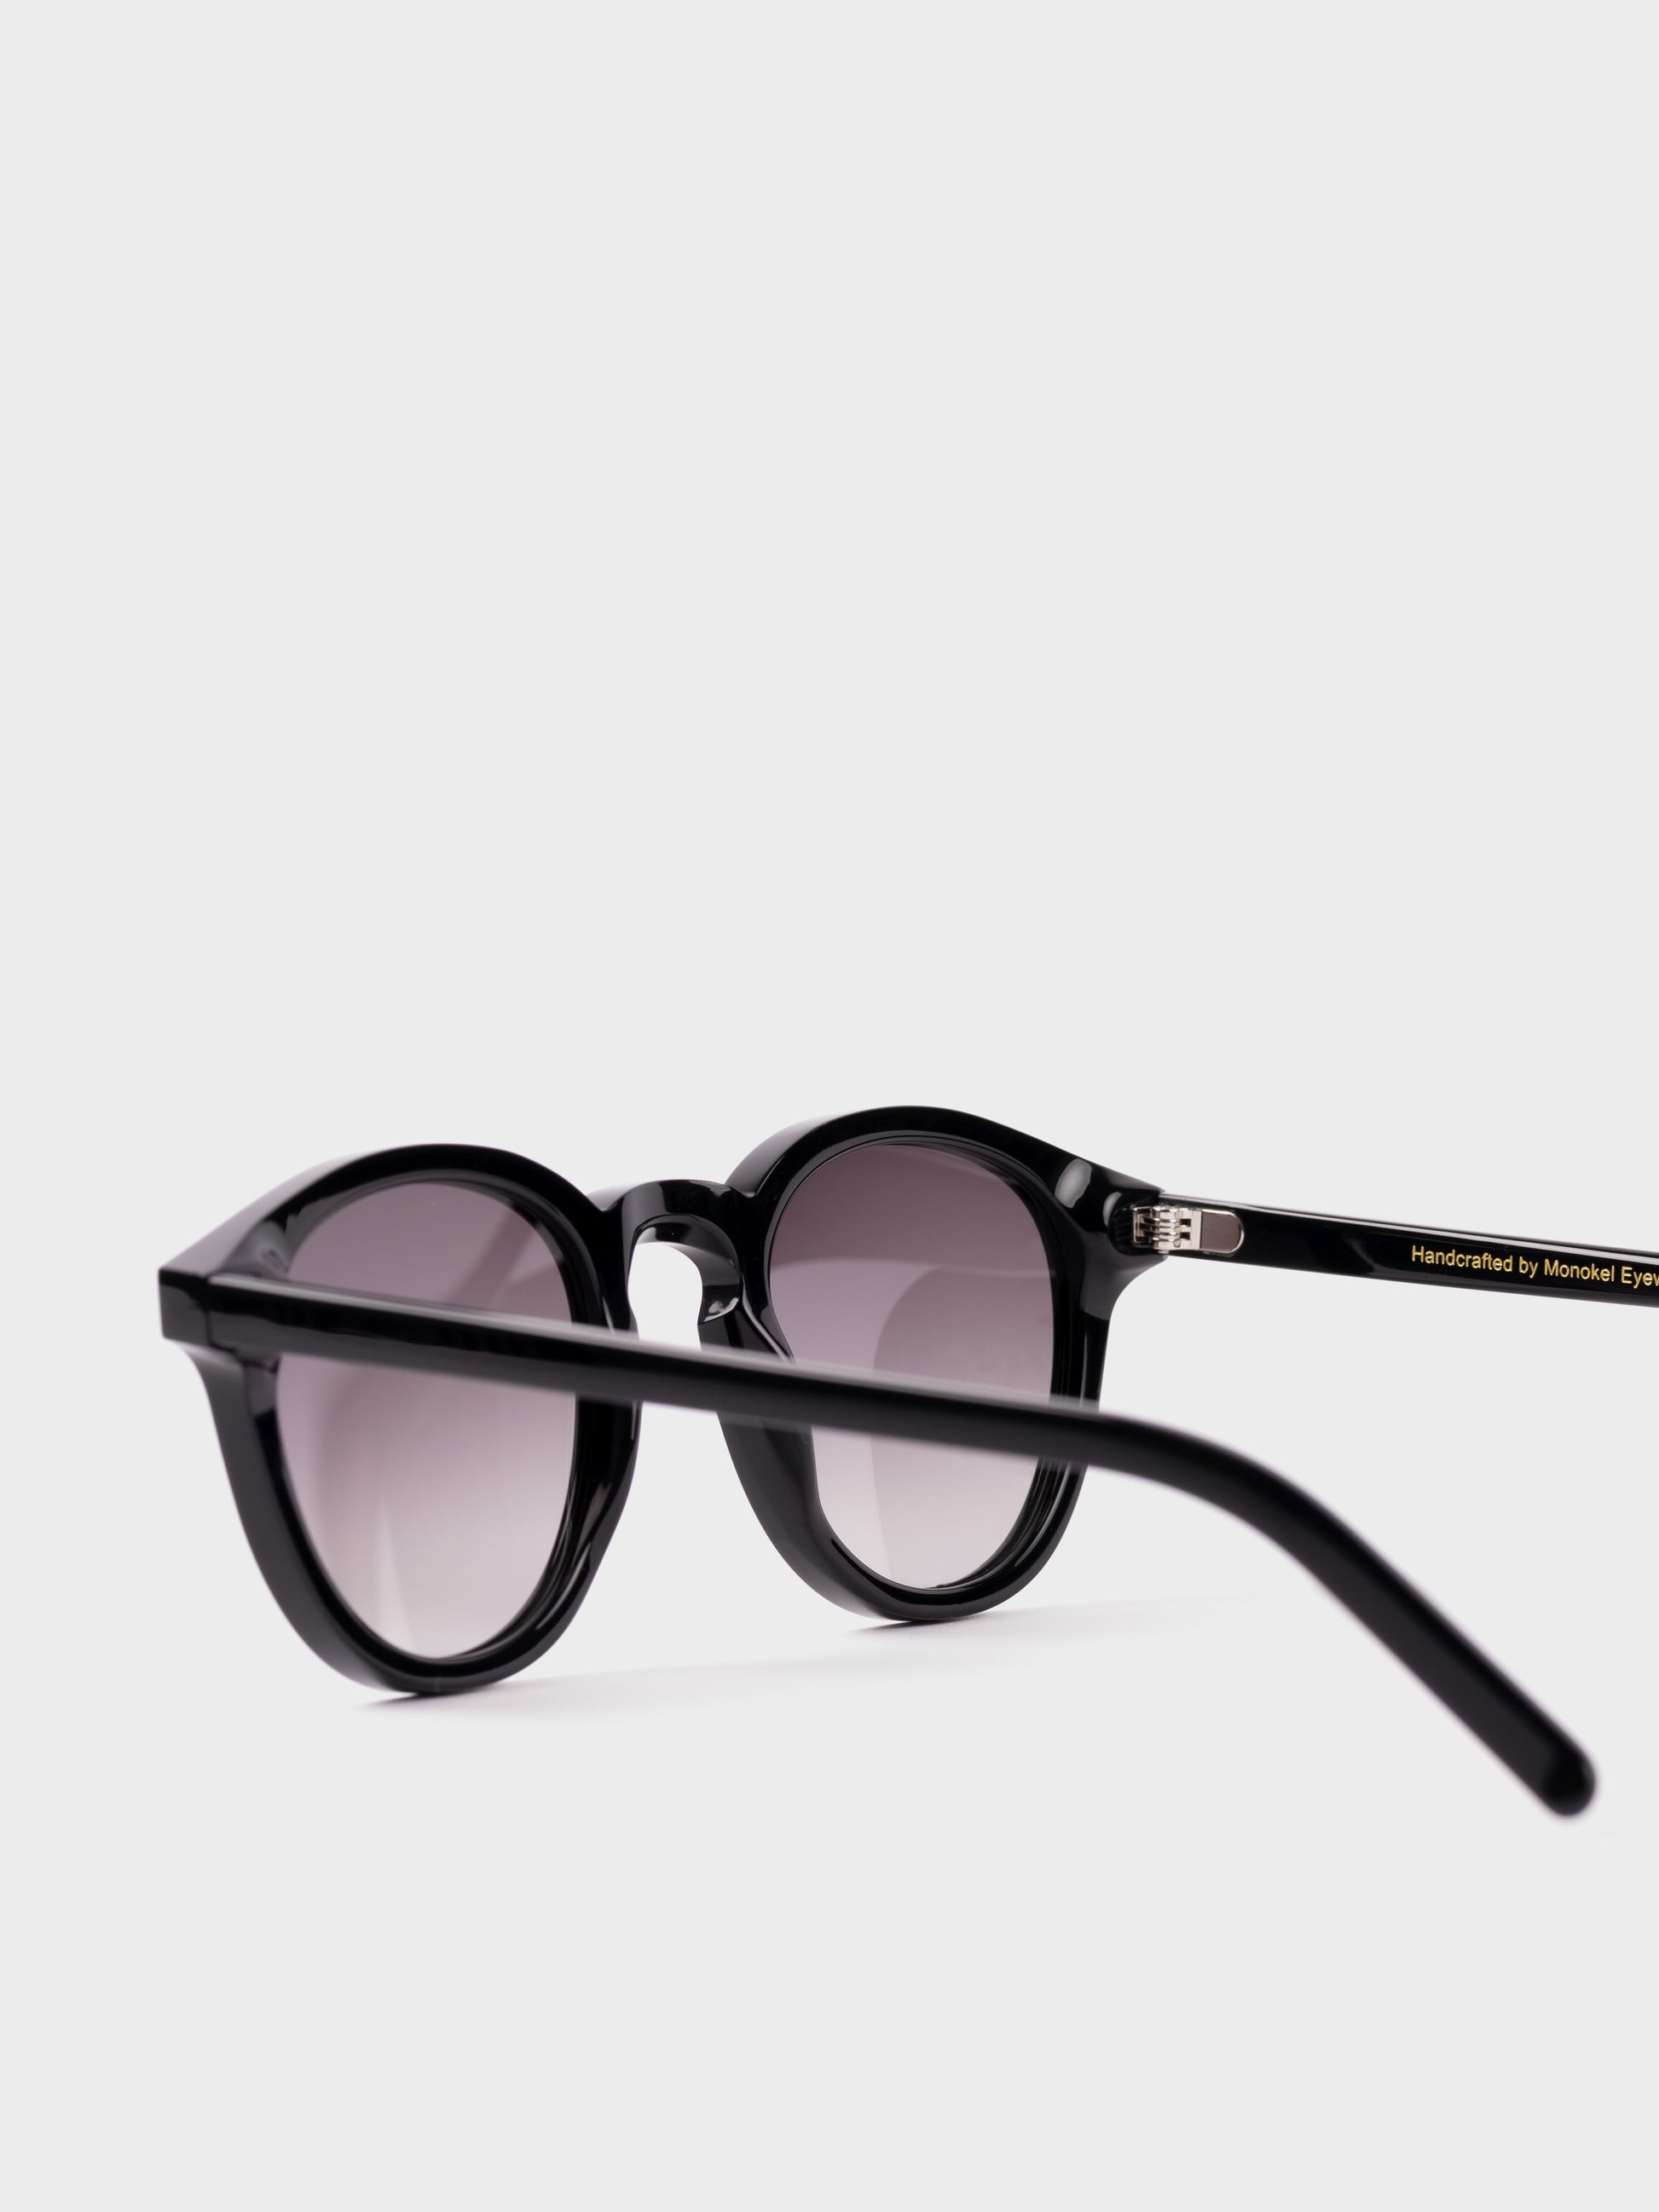 Monokel Sunglasses - Nelson Black/Grey Lens